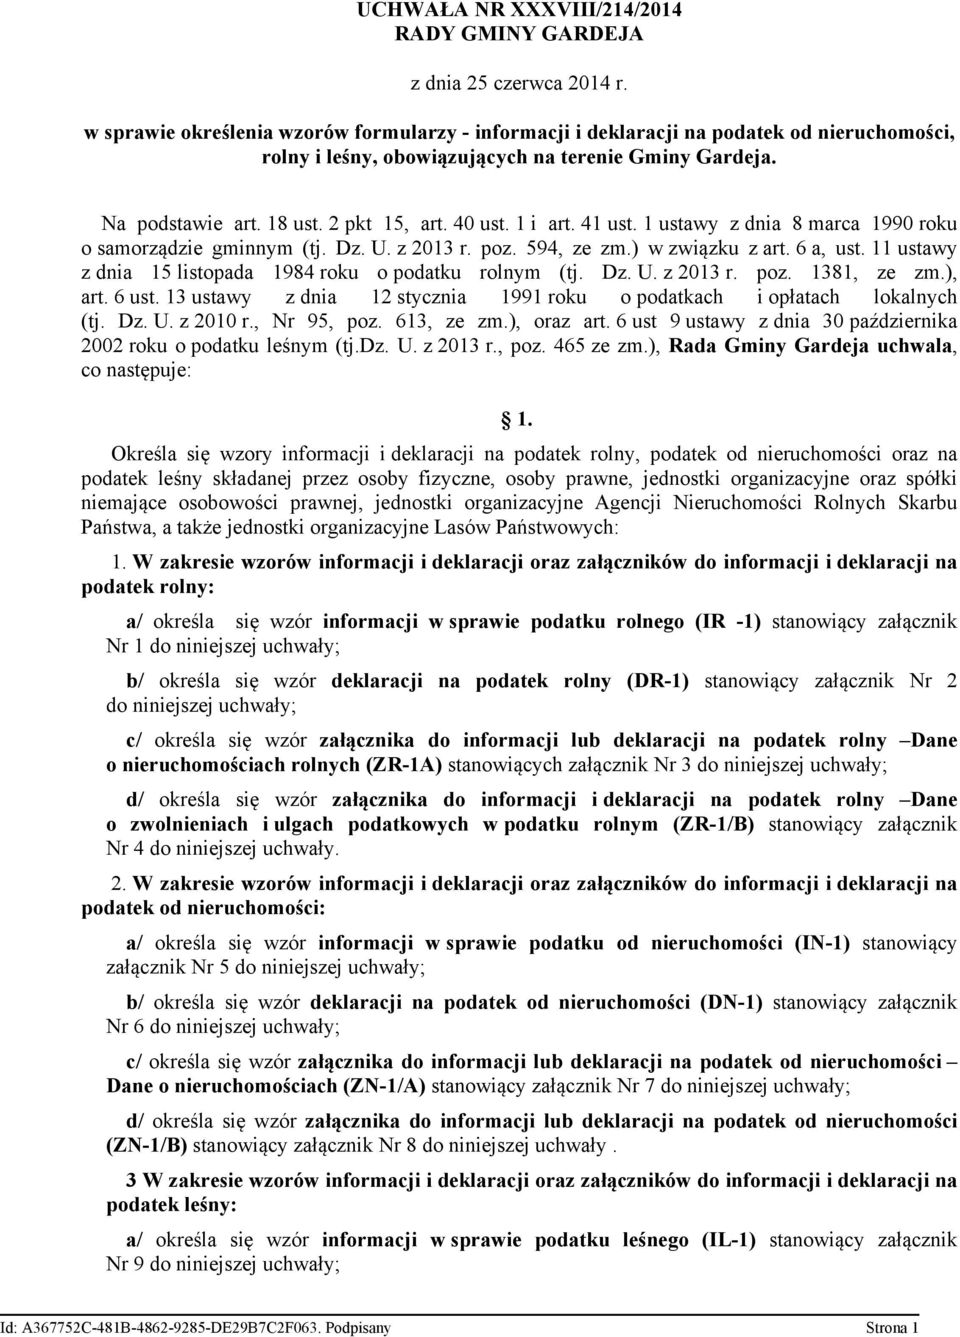 1 i art. 41 ust. 1 ustawy z dnia 8 marca 1990 roku o samorządzie gminnym (tj. Dz. U. z 2013 r. poz. 594 ze zm.) w związku z art. 6 a ust. 11 ustawy z dnia 15 listopada 1984 roku o podatku rolnym (tj.